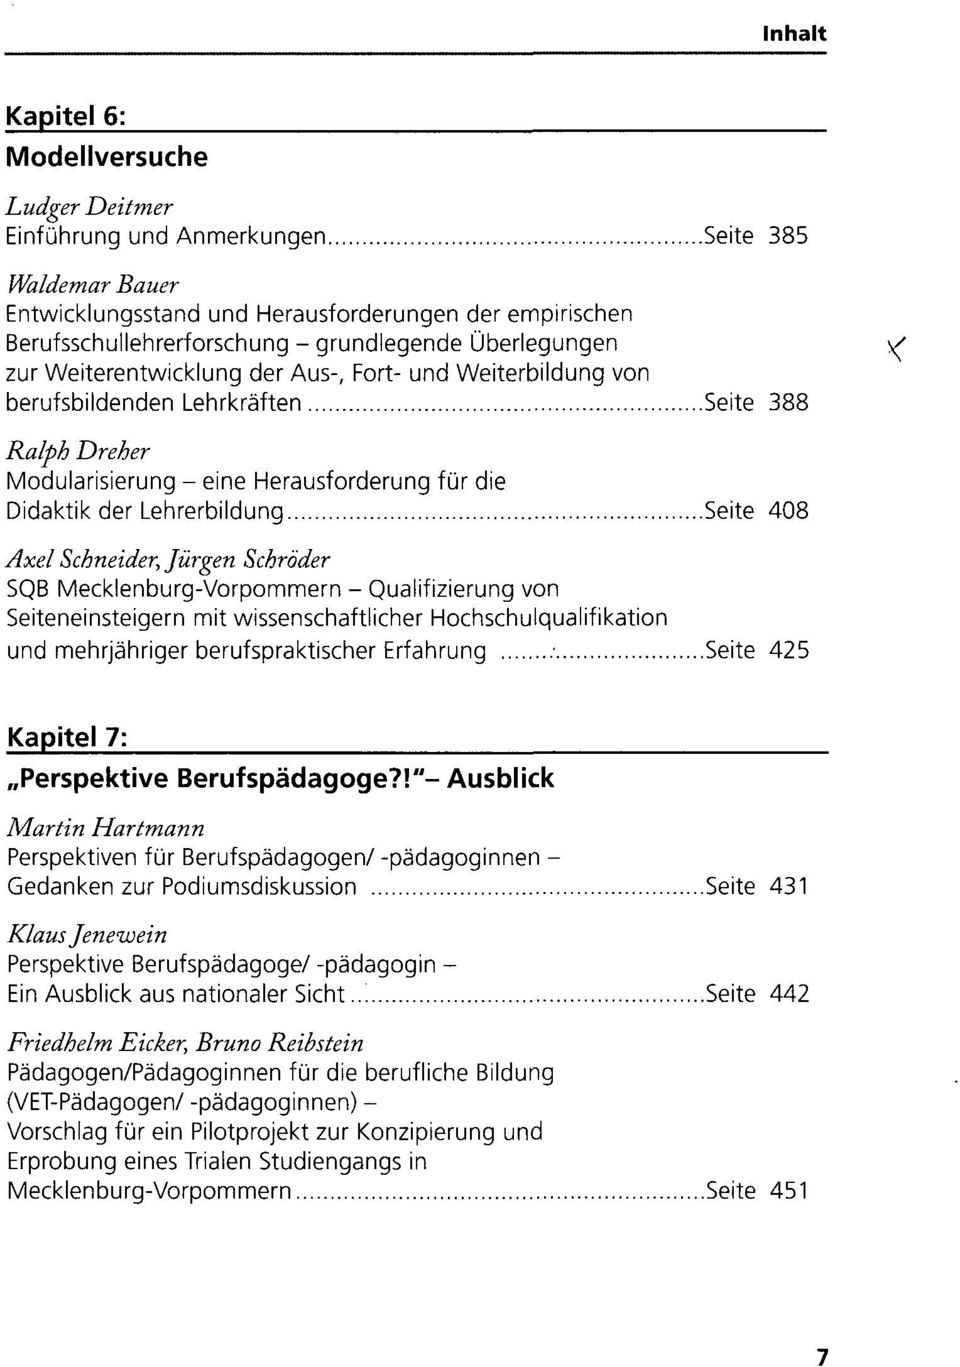 Seite 408 Axel Schneider, Jürgen Schröder SQB Mecklenburg-Vorpommern - Qualifizierung von Seiteneinsteigern mit wissenschaftlicher Hochschulqualifikation und mehrjähriger berufspraktischer Erfahrung